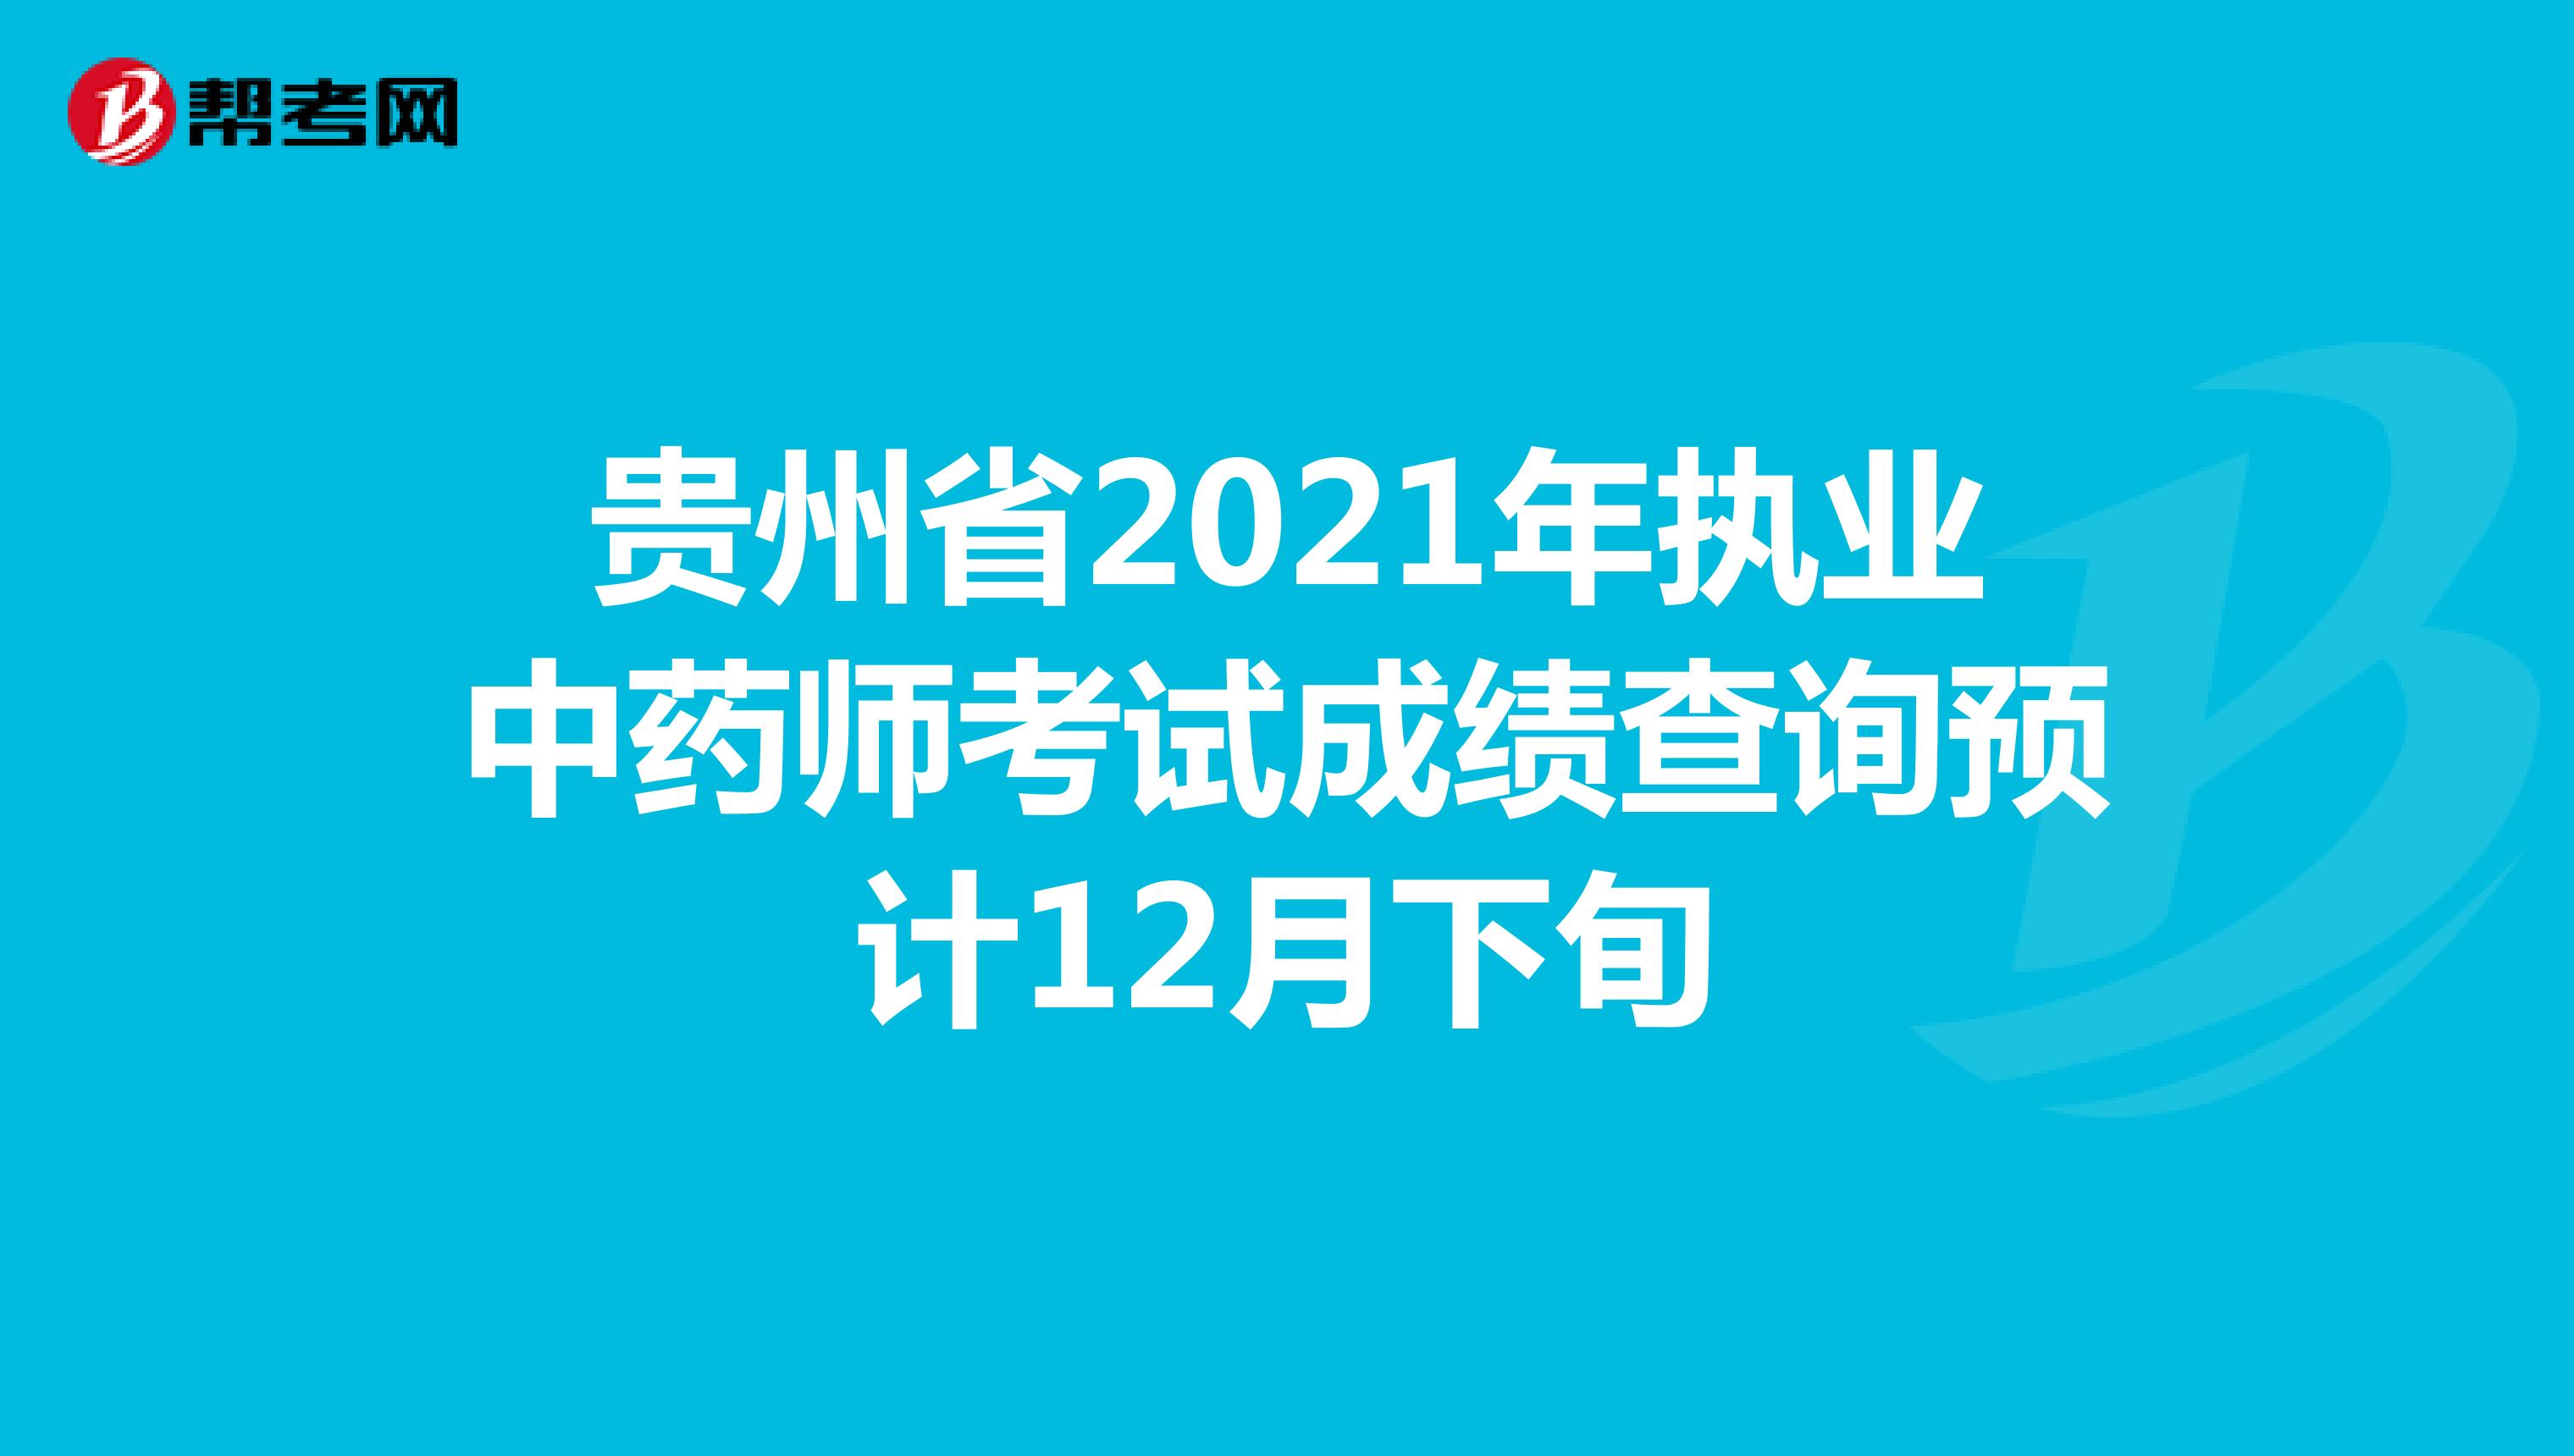 贵州省2021年执业中药师考试成绩查询预计12月下旬